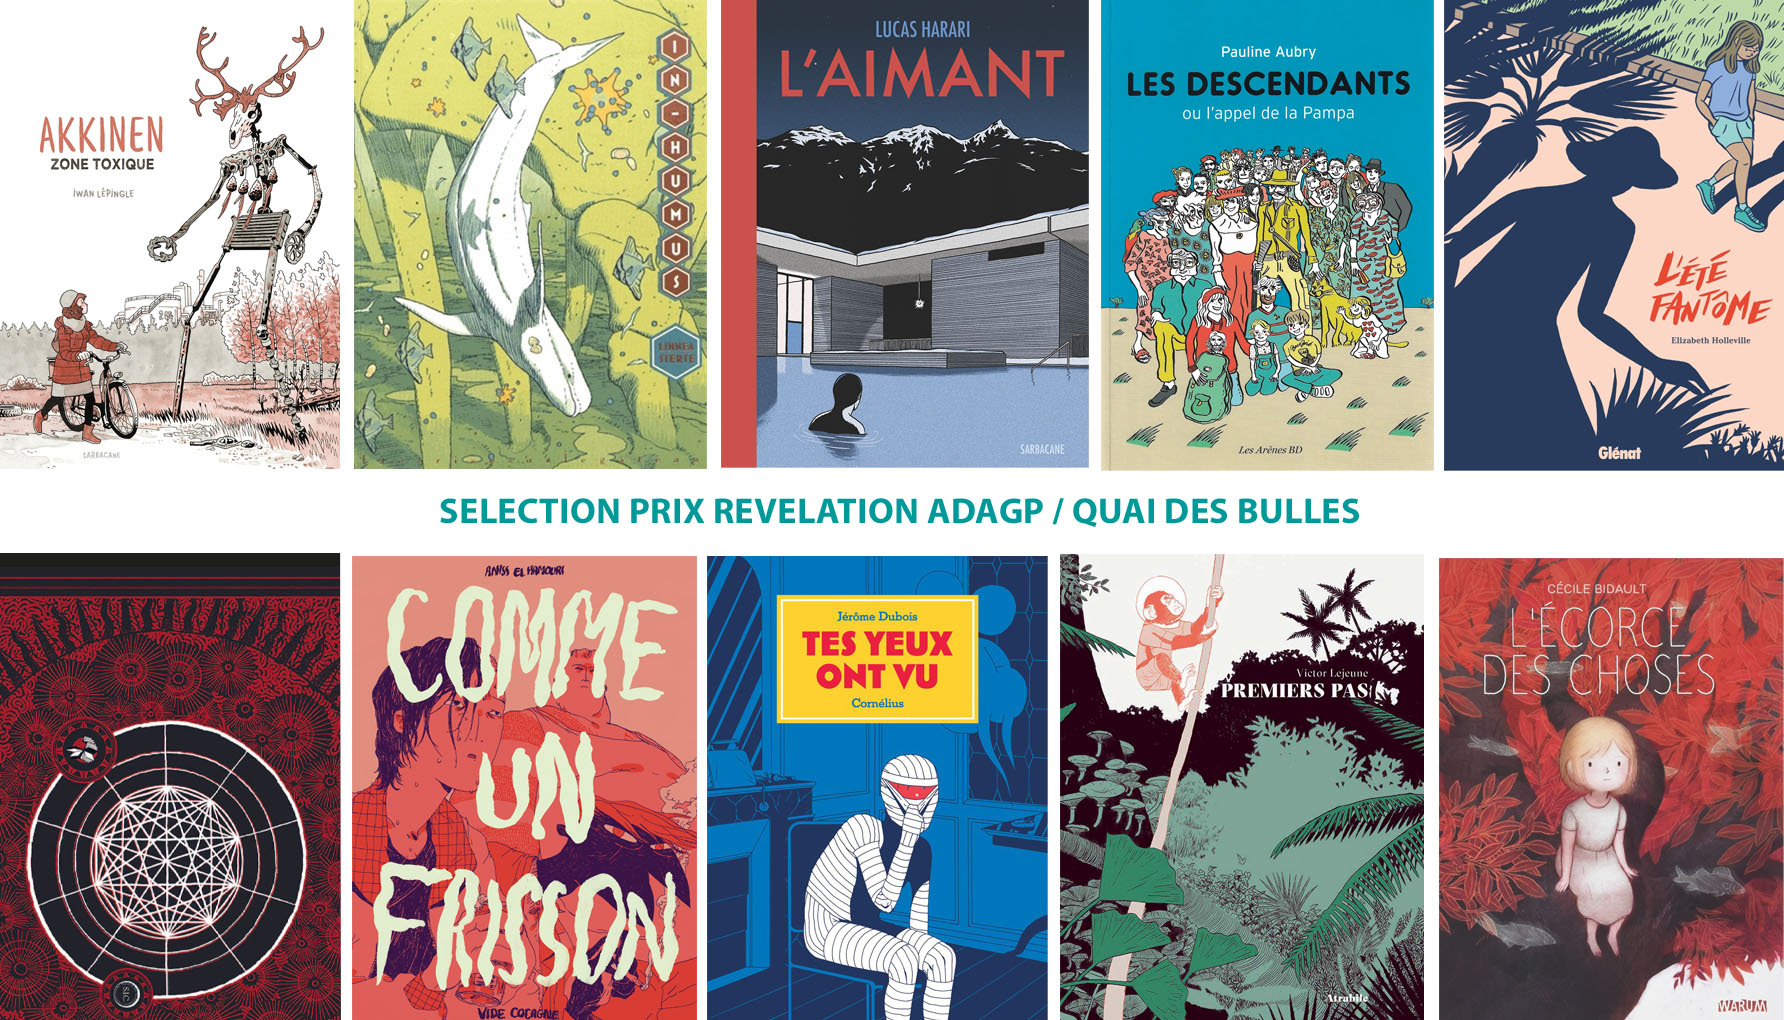 Les 10 livres sélectionnés pour le Prix Révélation ADAGP / Quai des bulles 2018